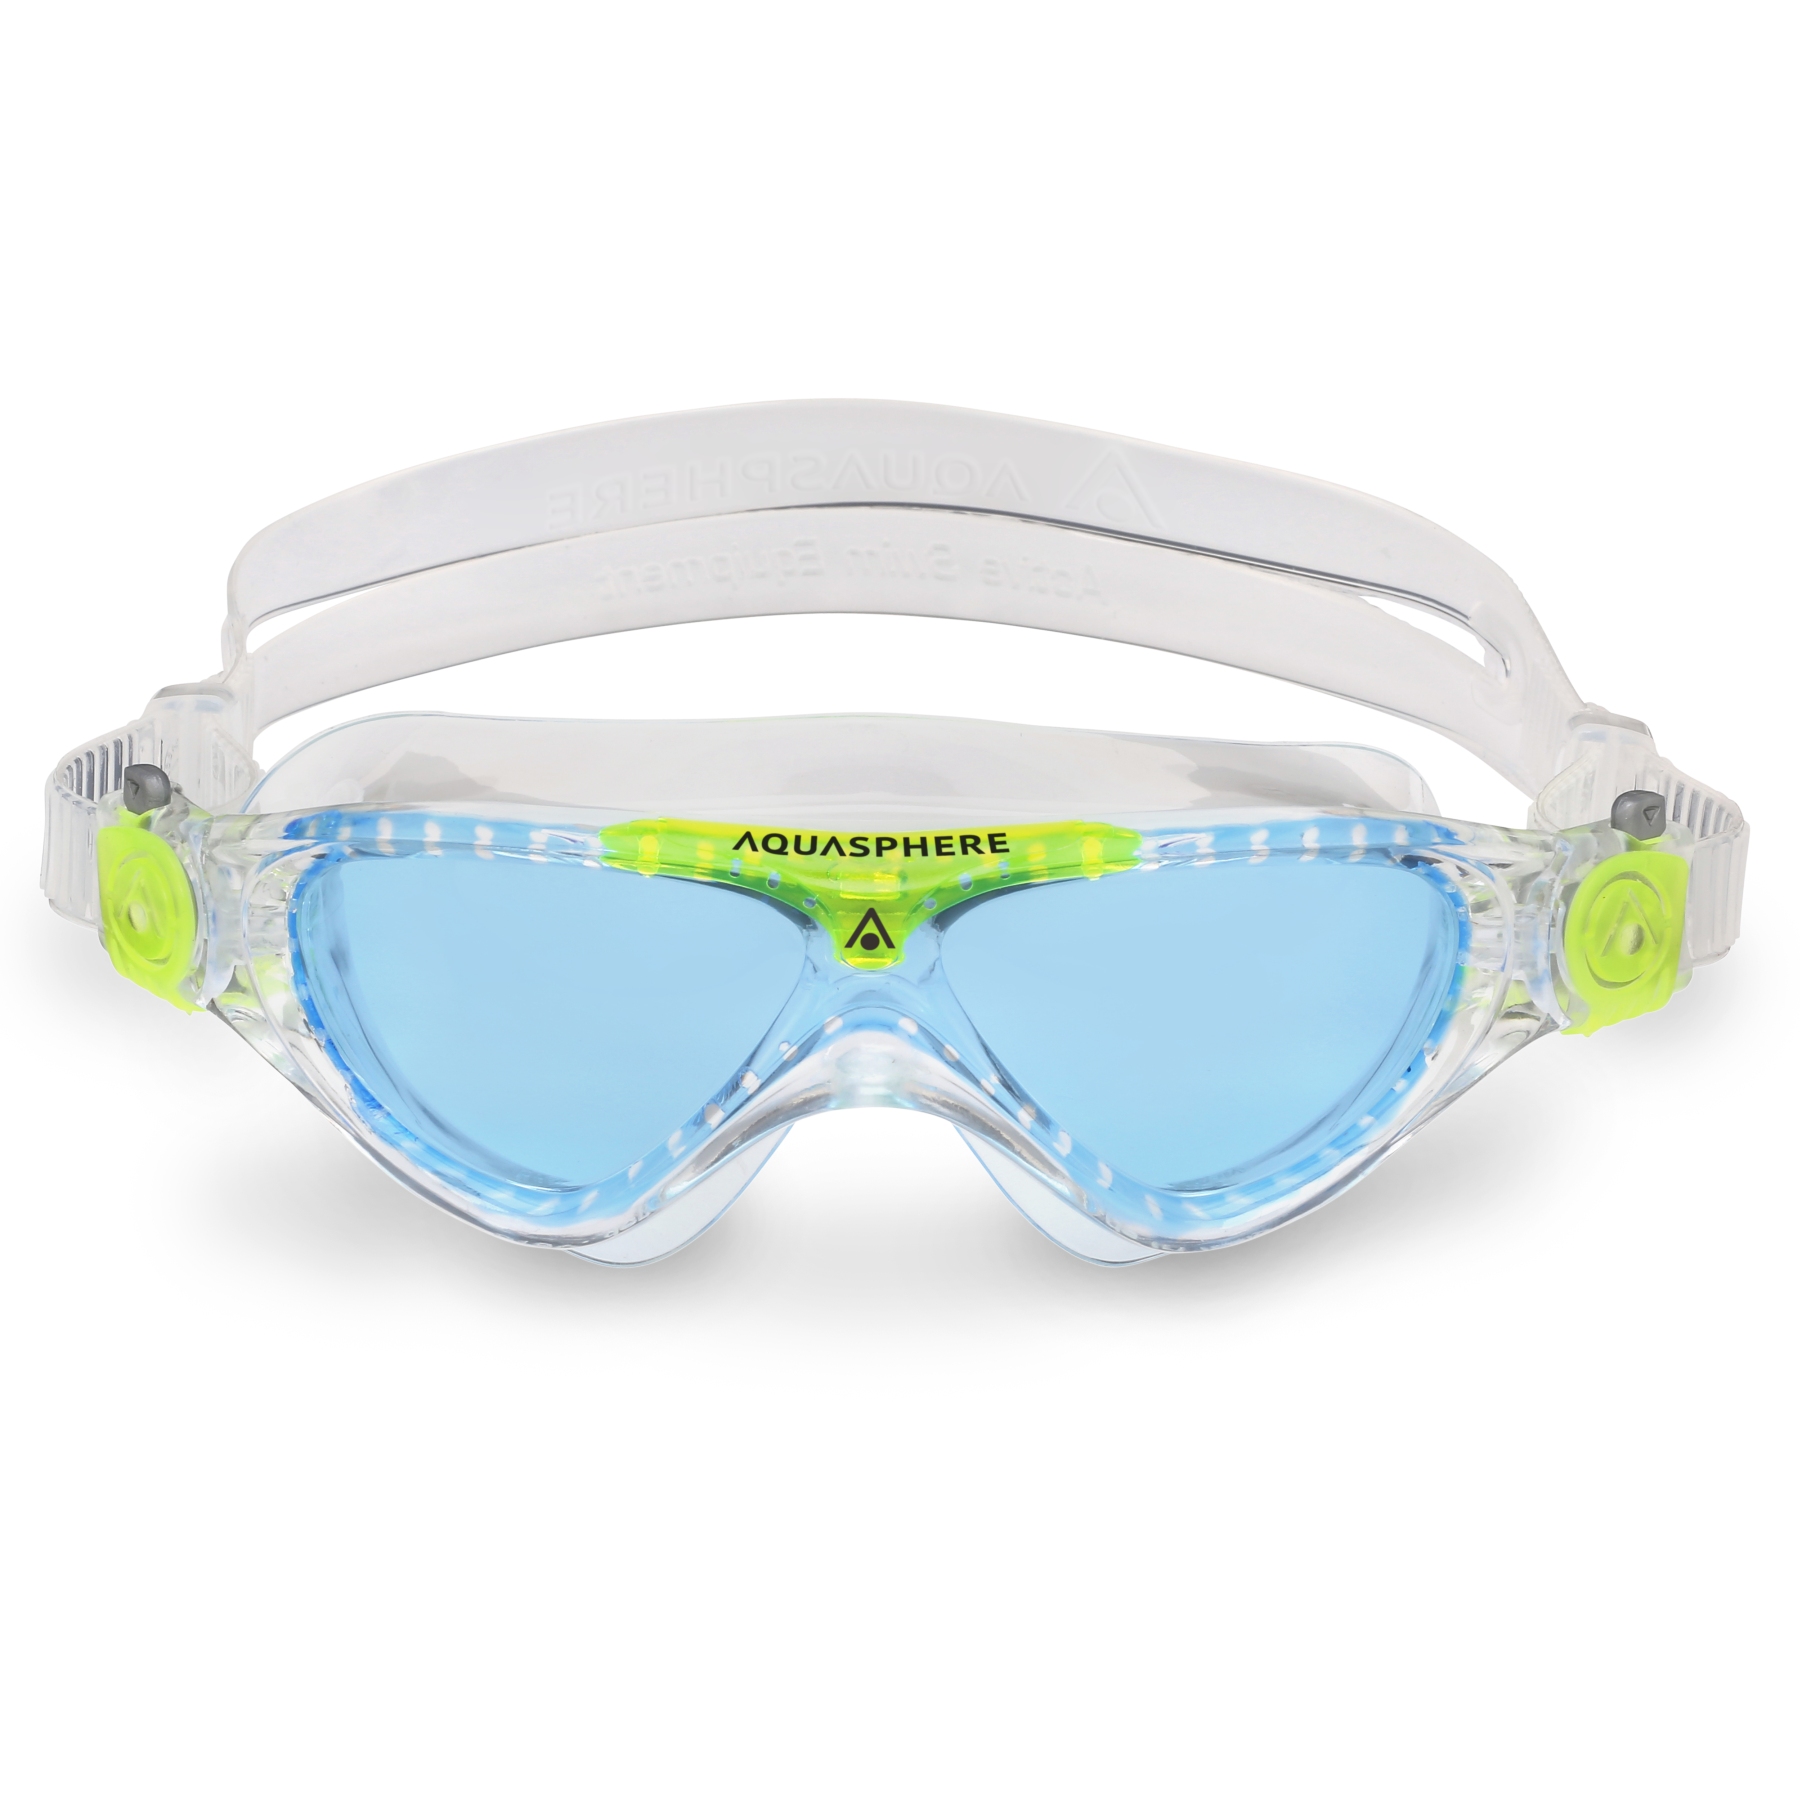 Produktbild von AQUASPHERE Vista Junior Kinder Schwimmbrille - Blau getönt - Transparent/Bright Green